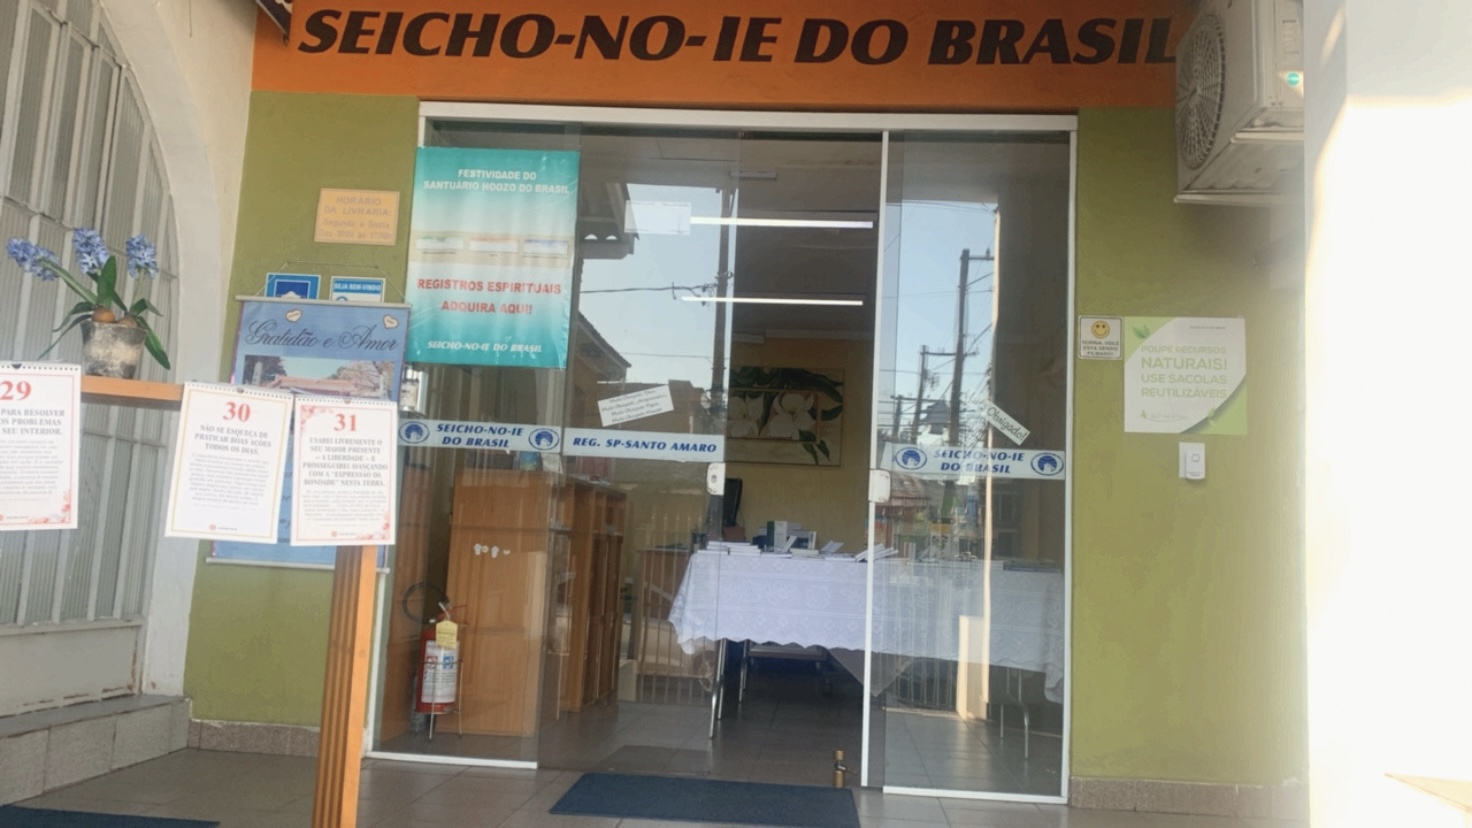 sp santo amaro regional em santo amaro SEICHO-NO-IE DO BRASIL - Regionais em Português Regionais em PortuguêsRegionais com reuniões na língua portuguesa.